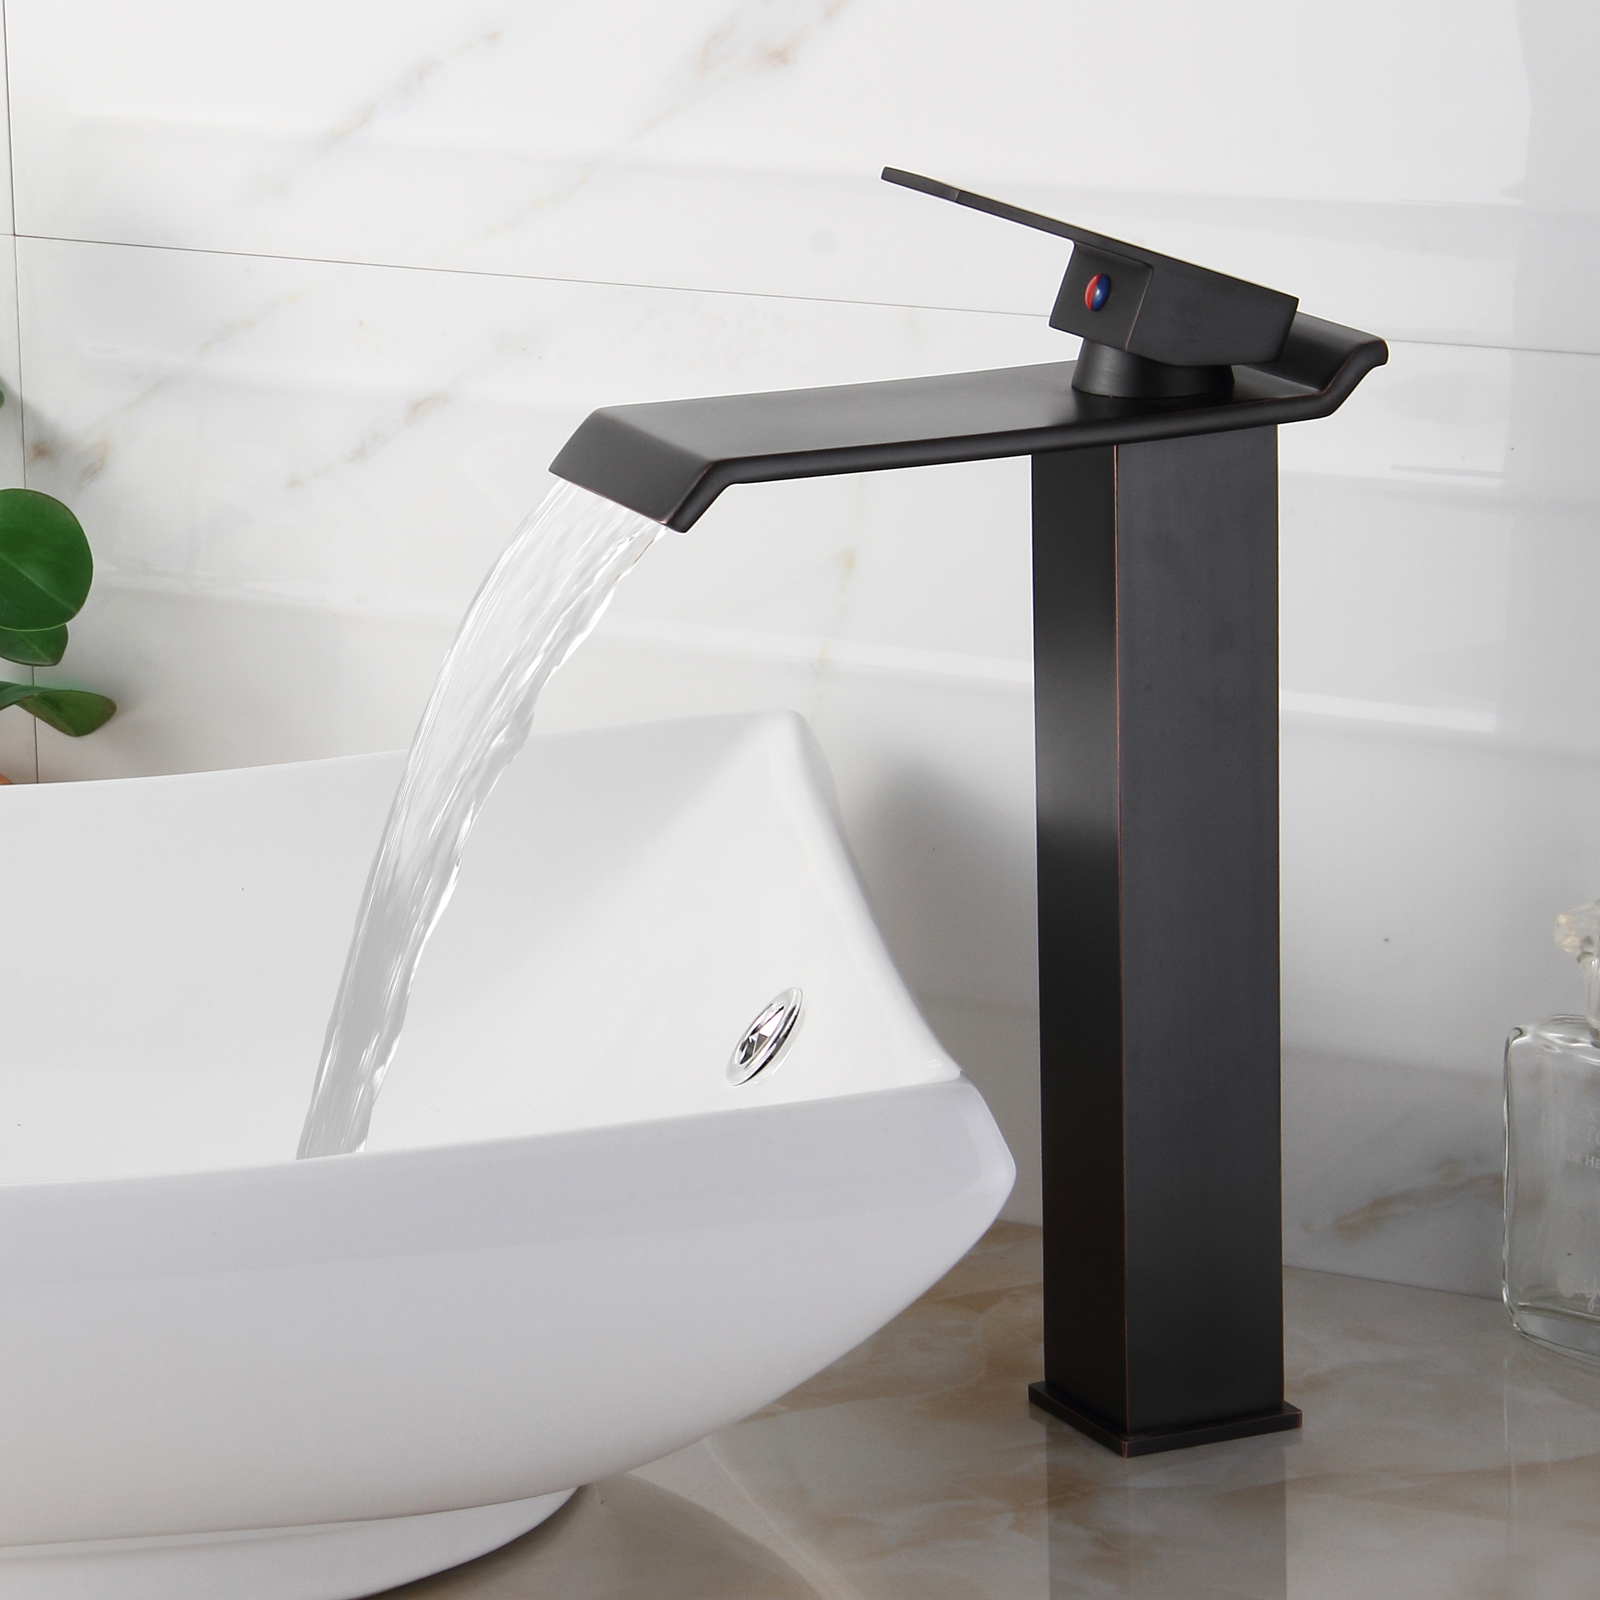 Unique Faucets For Vessel Sinks • Faucet Ideas Site